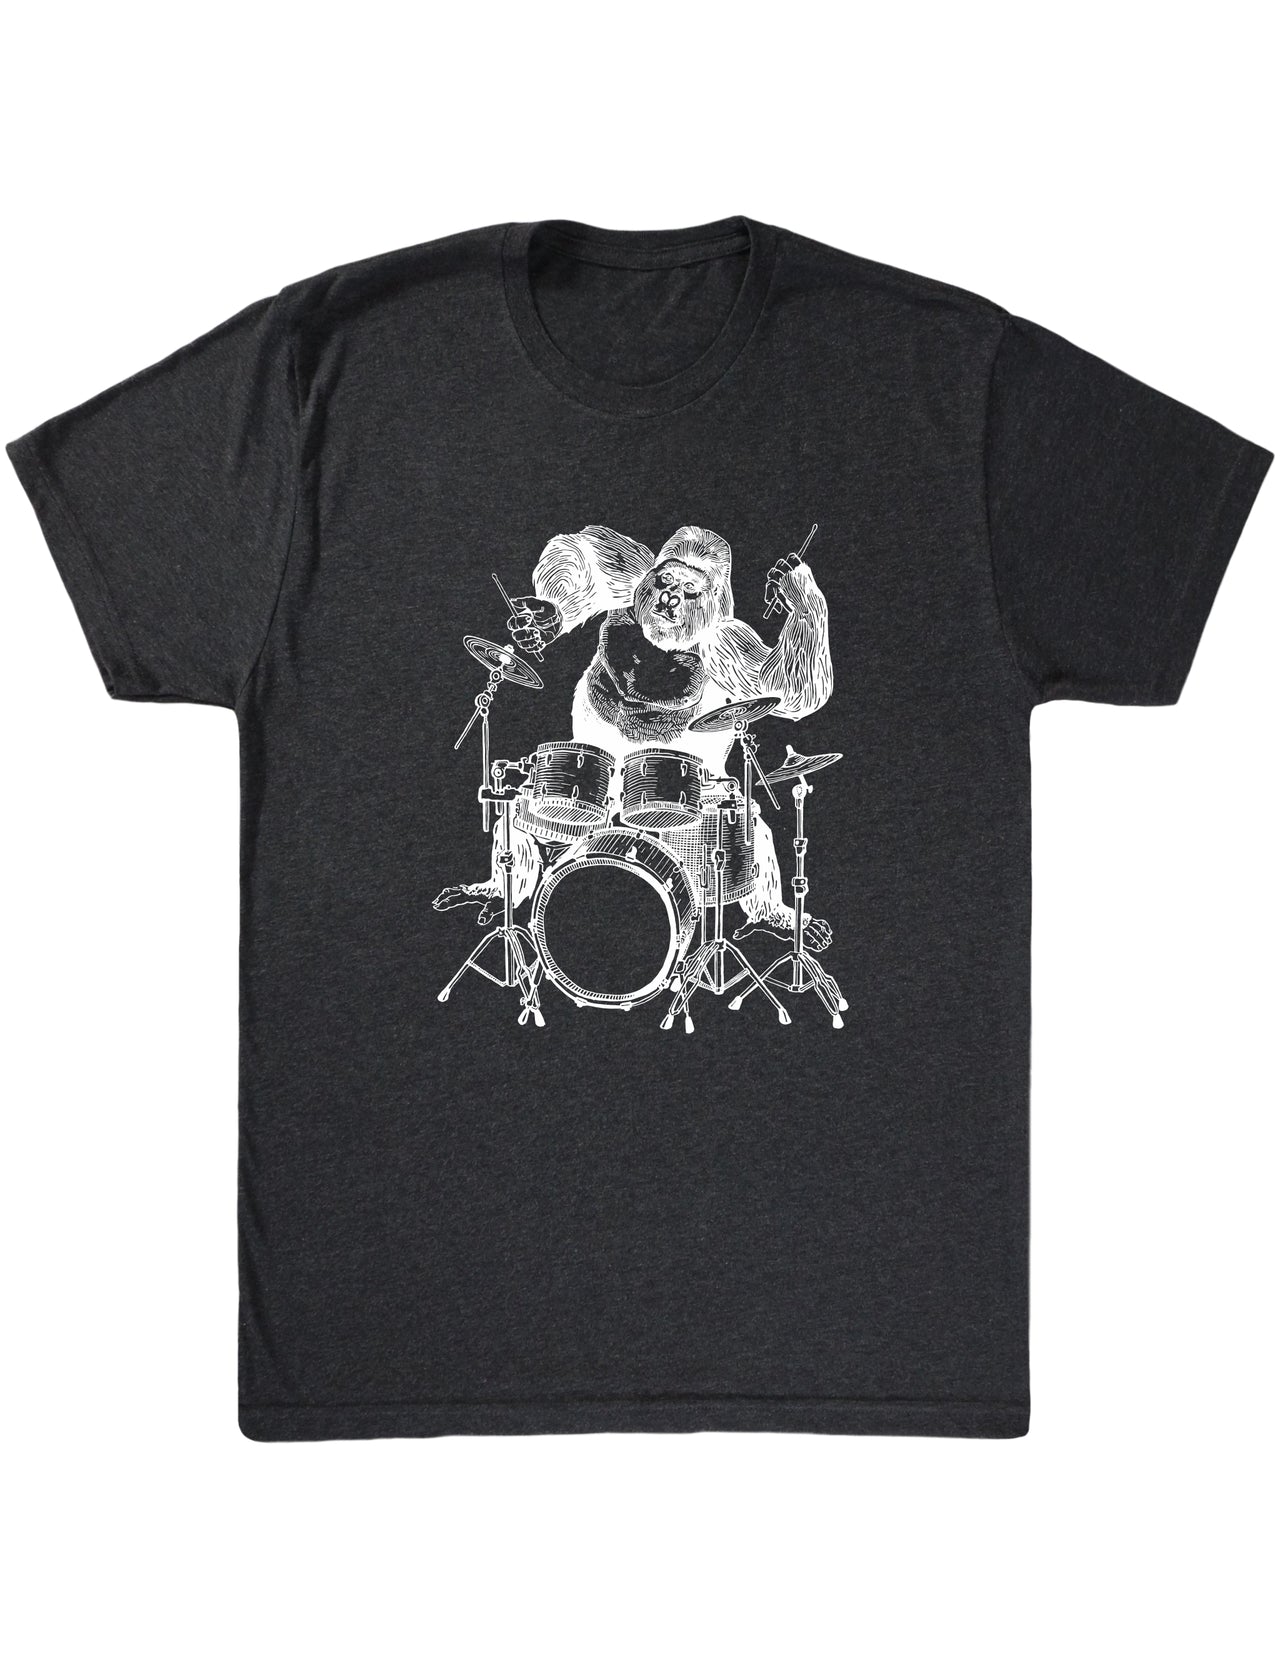 seembo-gorilla-animal-drummer-playing-drums-art-men-vintage-black-t-shirt